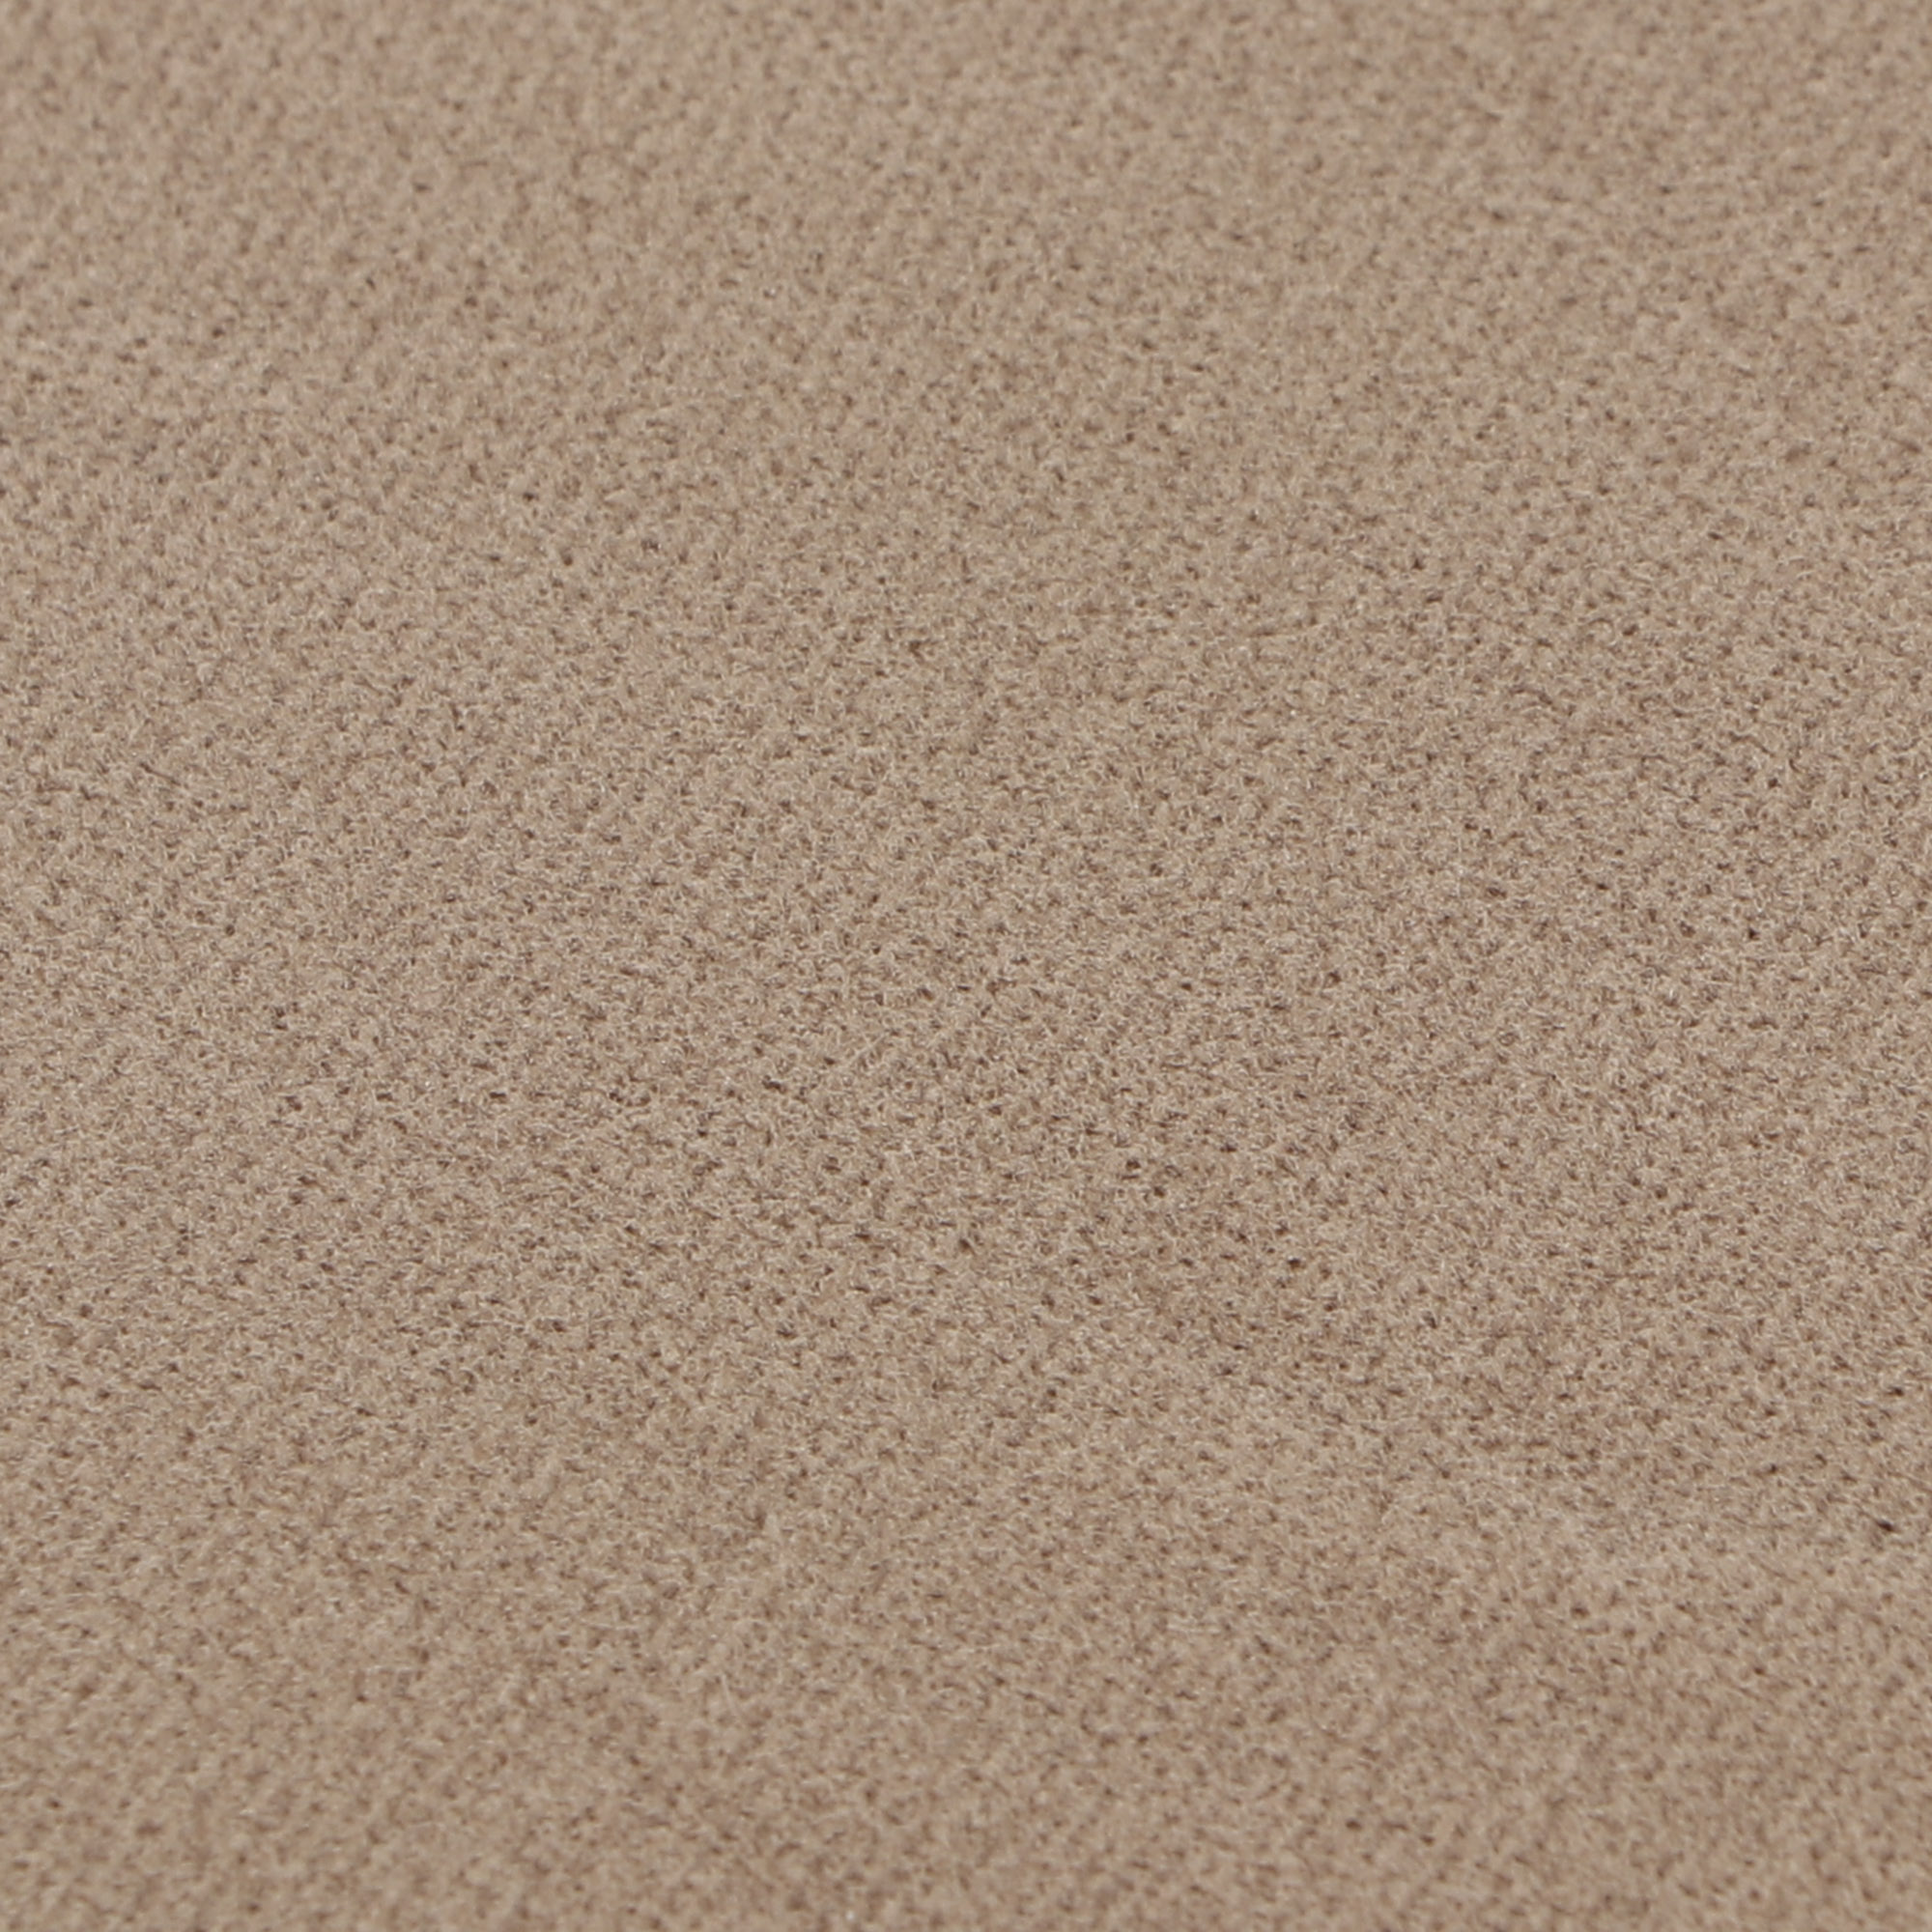 Колготки Sanpellegrino Comodo Curvy 20 Nudo L, цвет светло-бежевый, размер 3 - фото 2